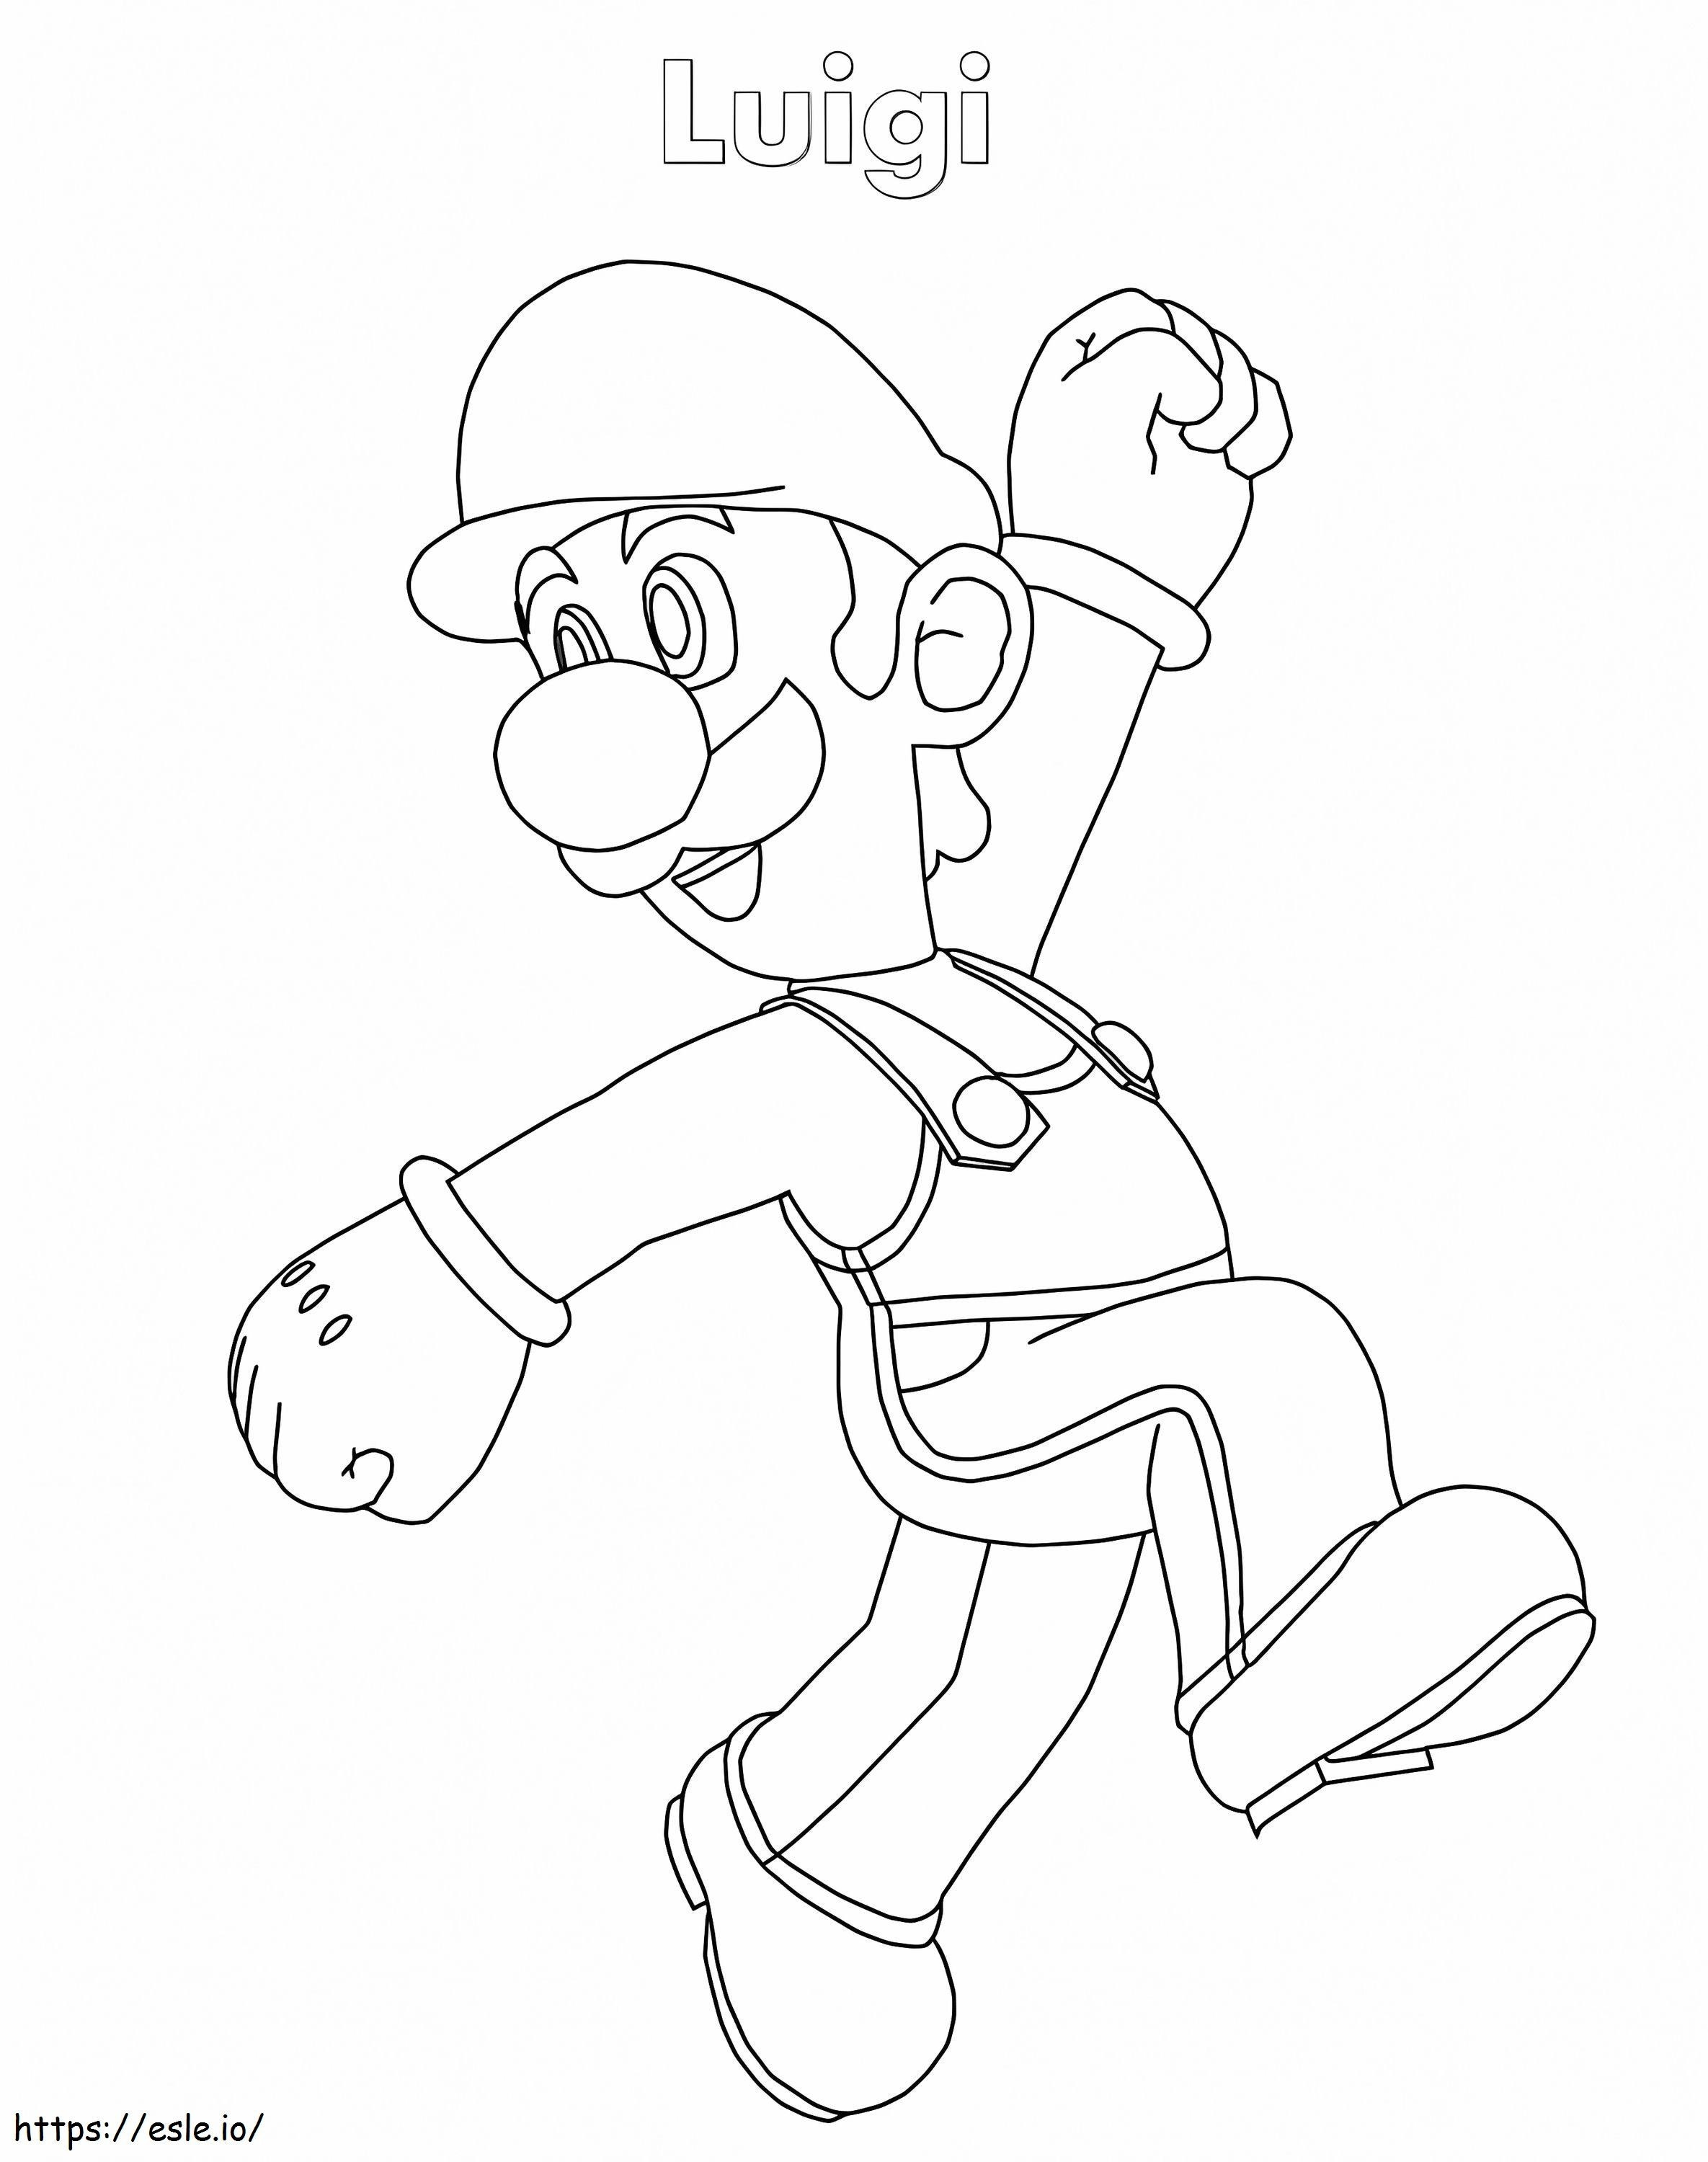 Luigi De Super Mario 7 kolorowanka